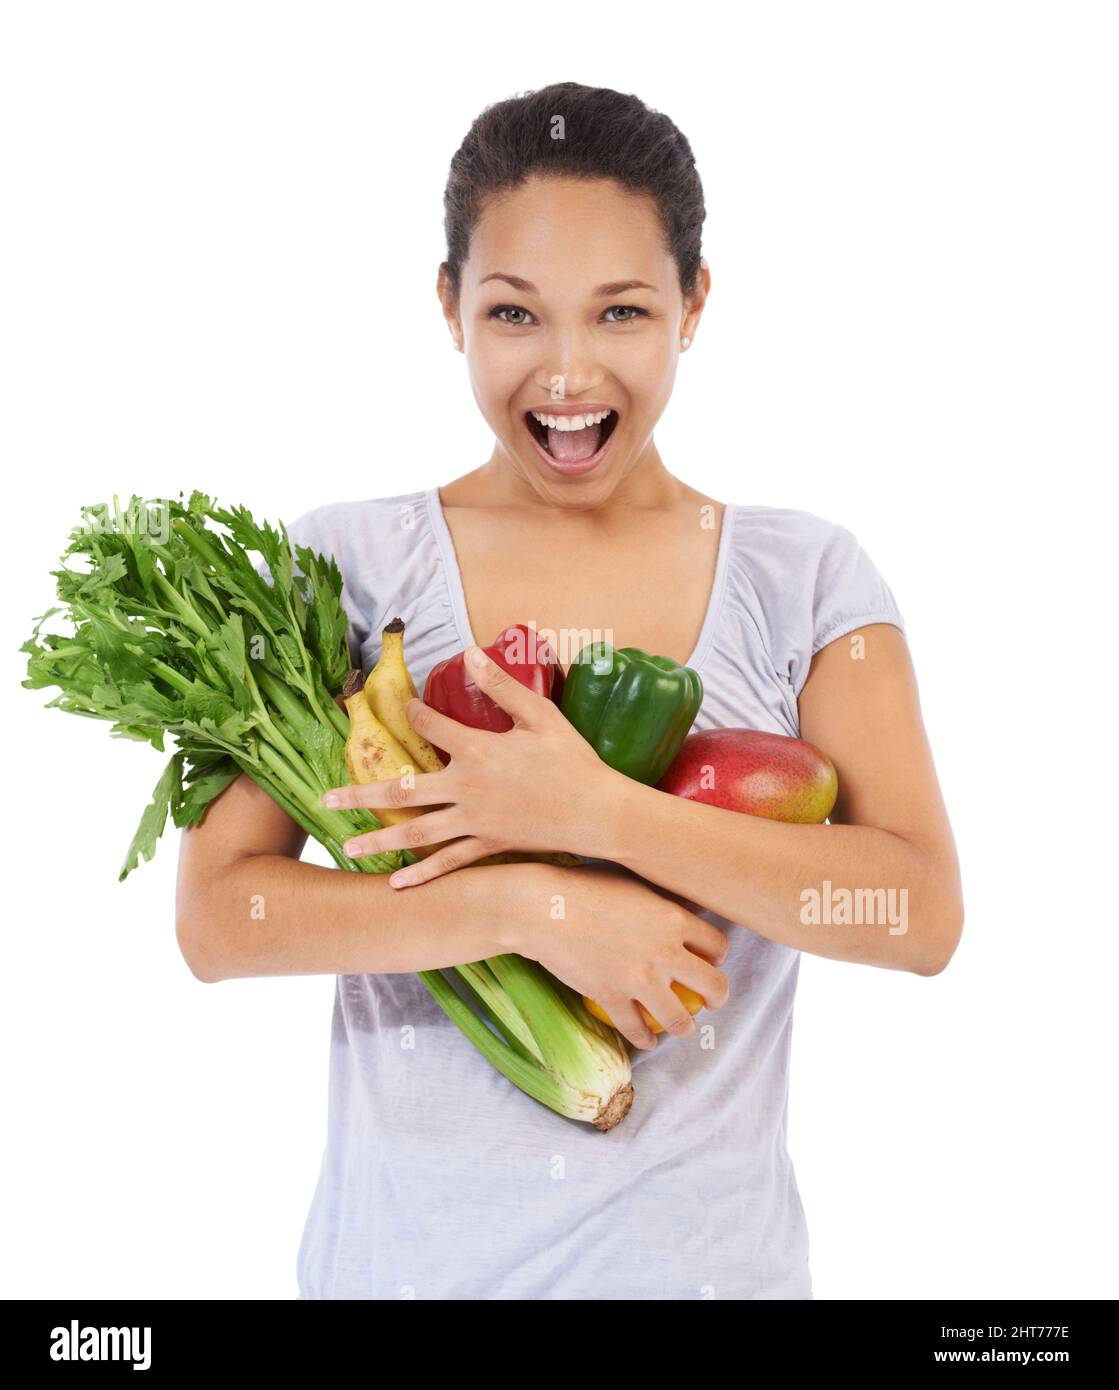 Diese Gemüse sind einfach so frisch. Junge Frau lächelt, während sie eine Armvoll frisches Gemüse hält - isoliert. Stockfoto